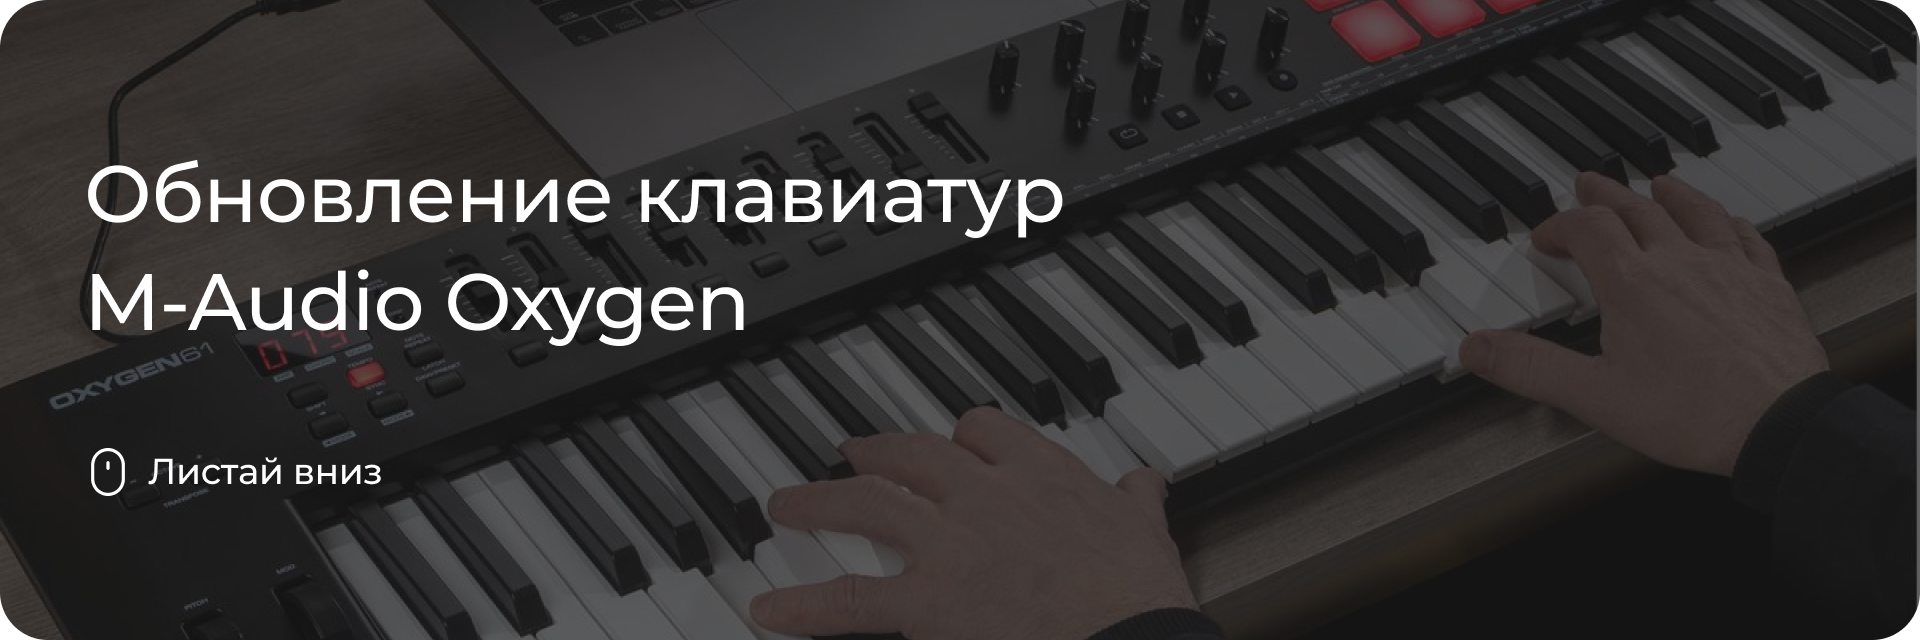 Обновление клавиатур M-Audio Oxygen